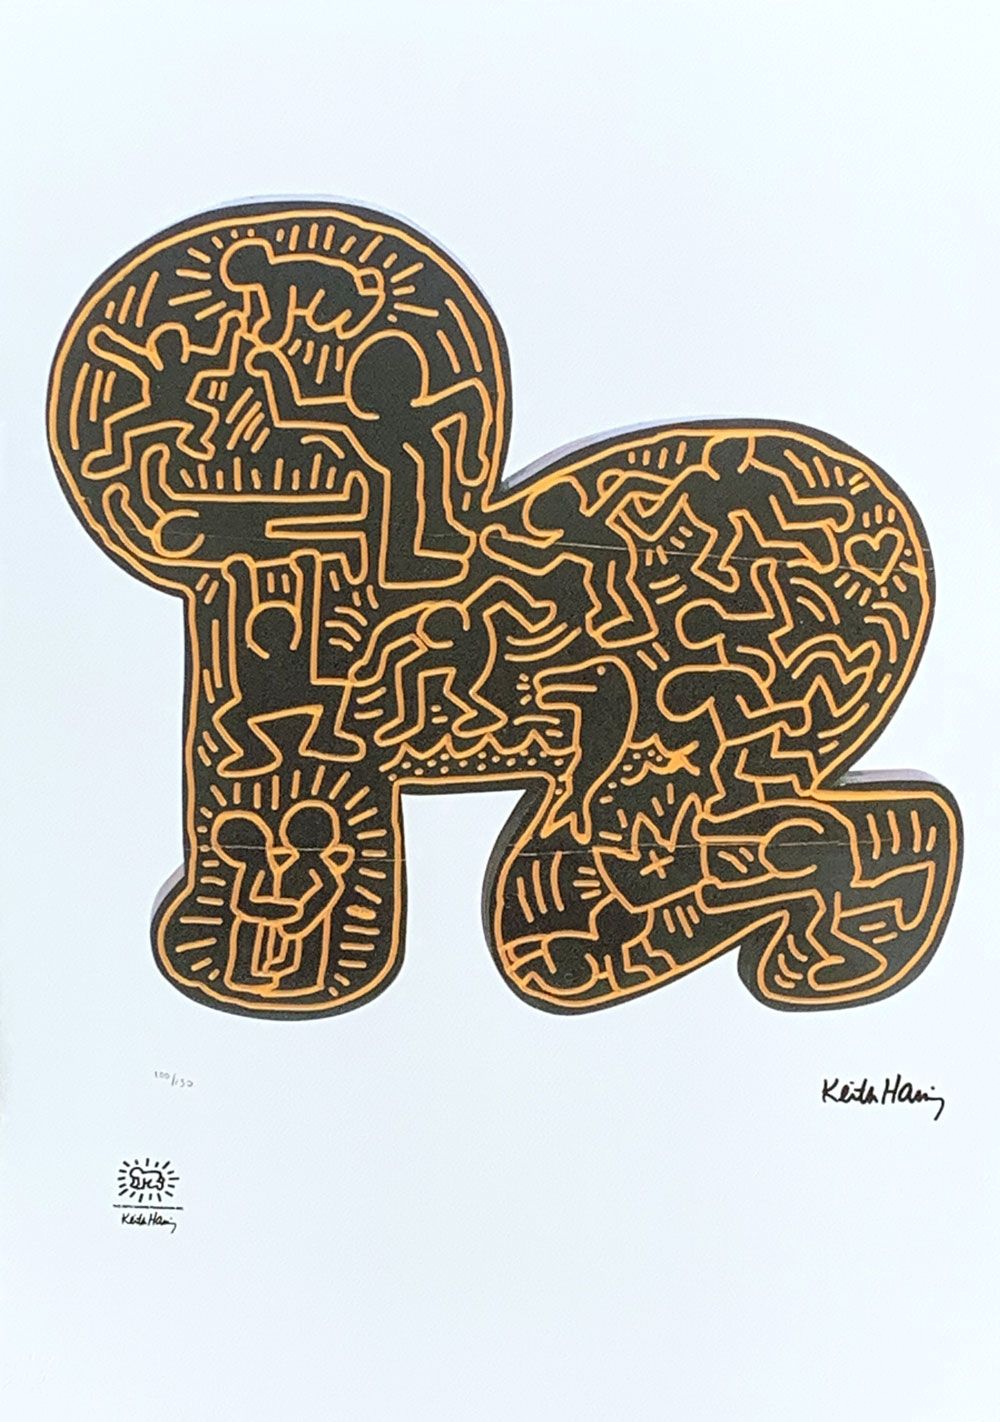 Keith Haring SERIGRAFÍA "BABY" de Keith HARING (1958-1990)

Firmado en la placa &hellip;